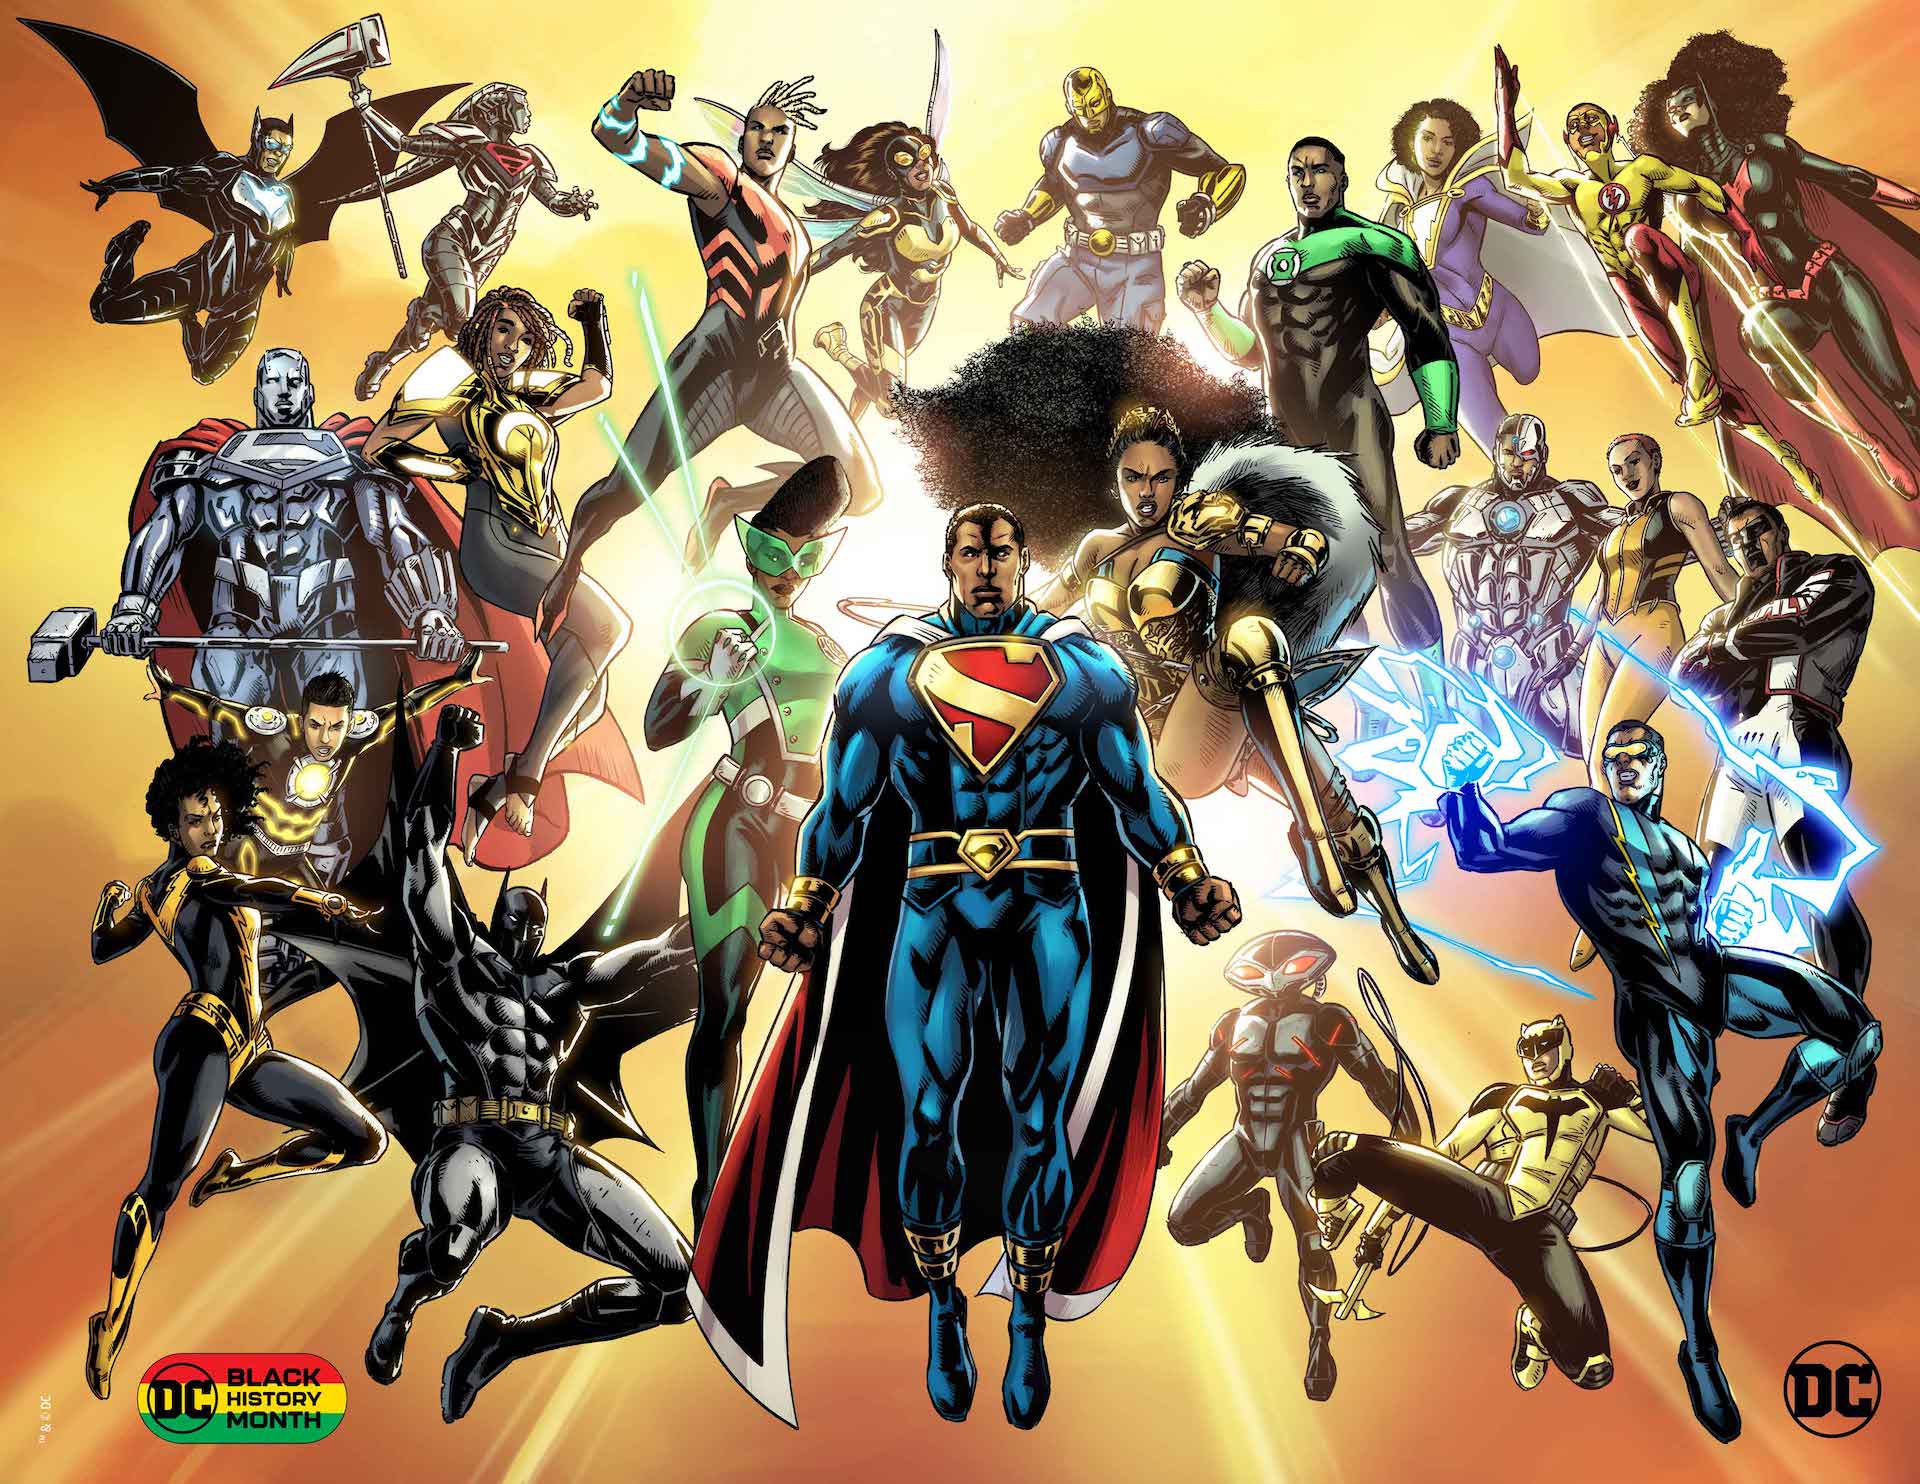 DC Comics outlines Black History Month 2022 plans